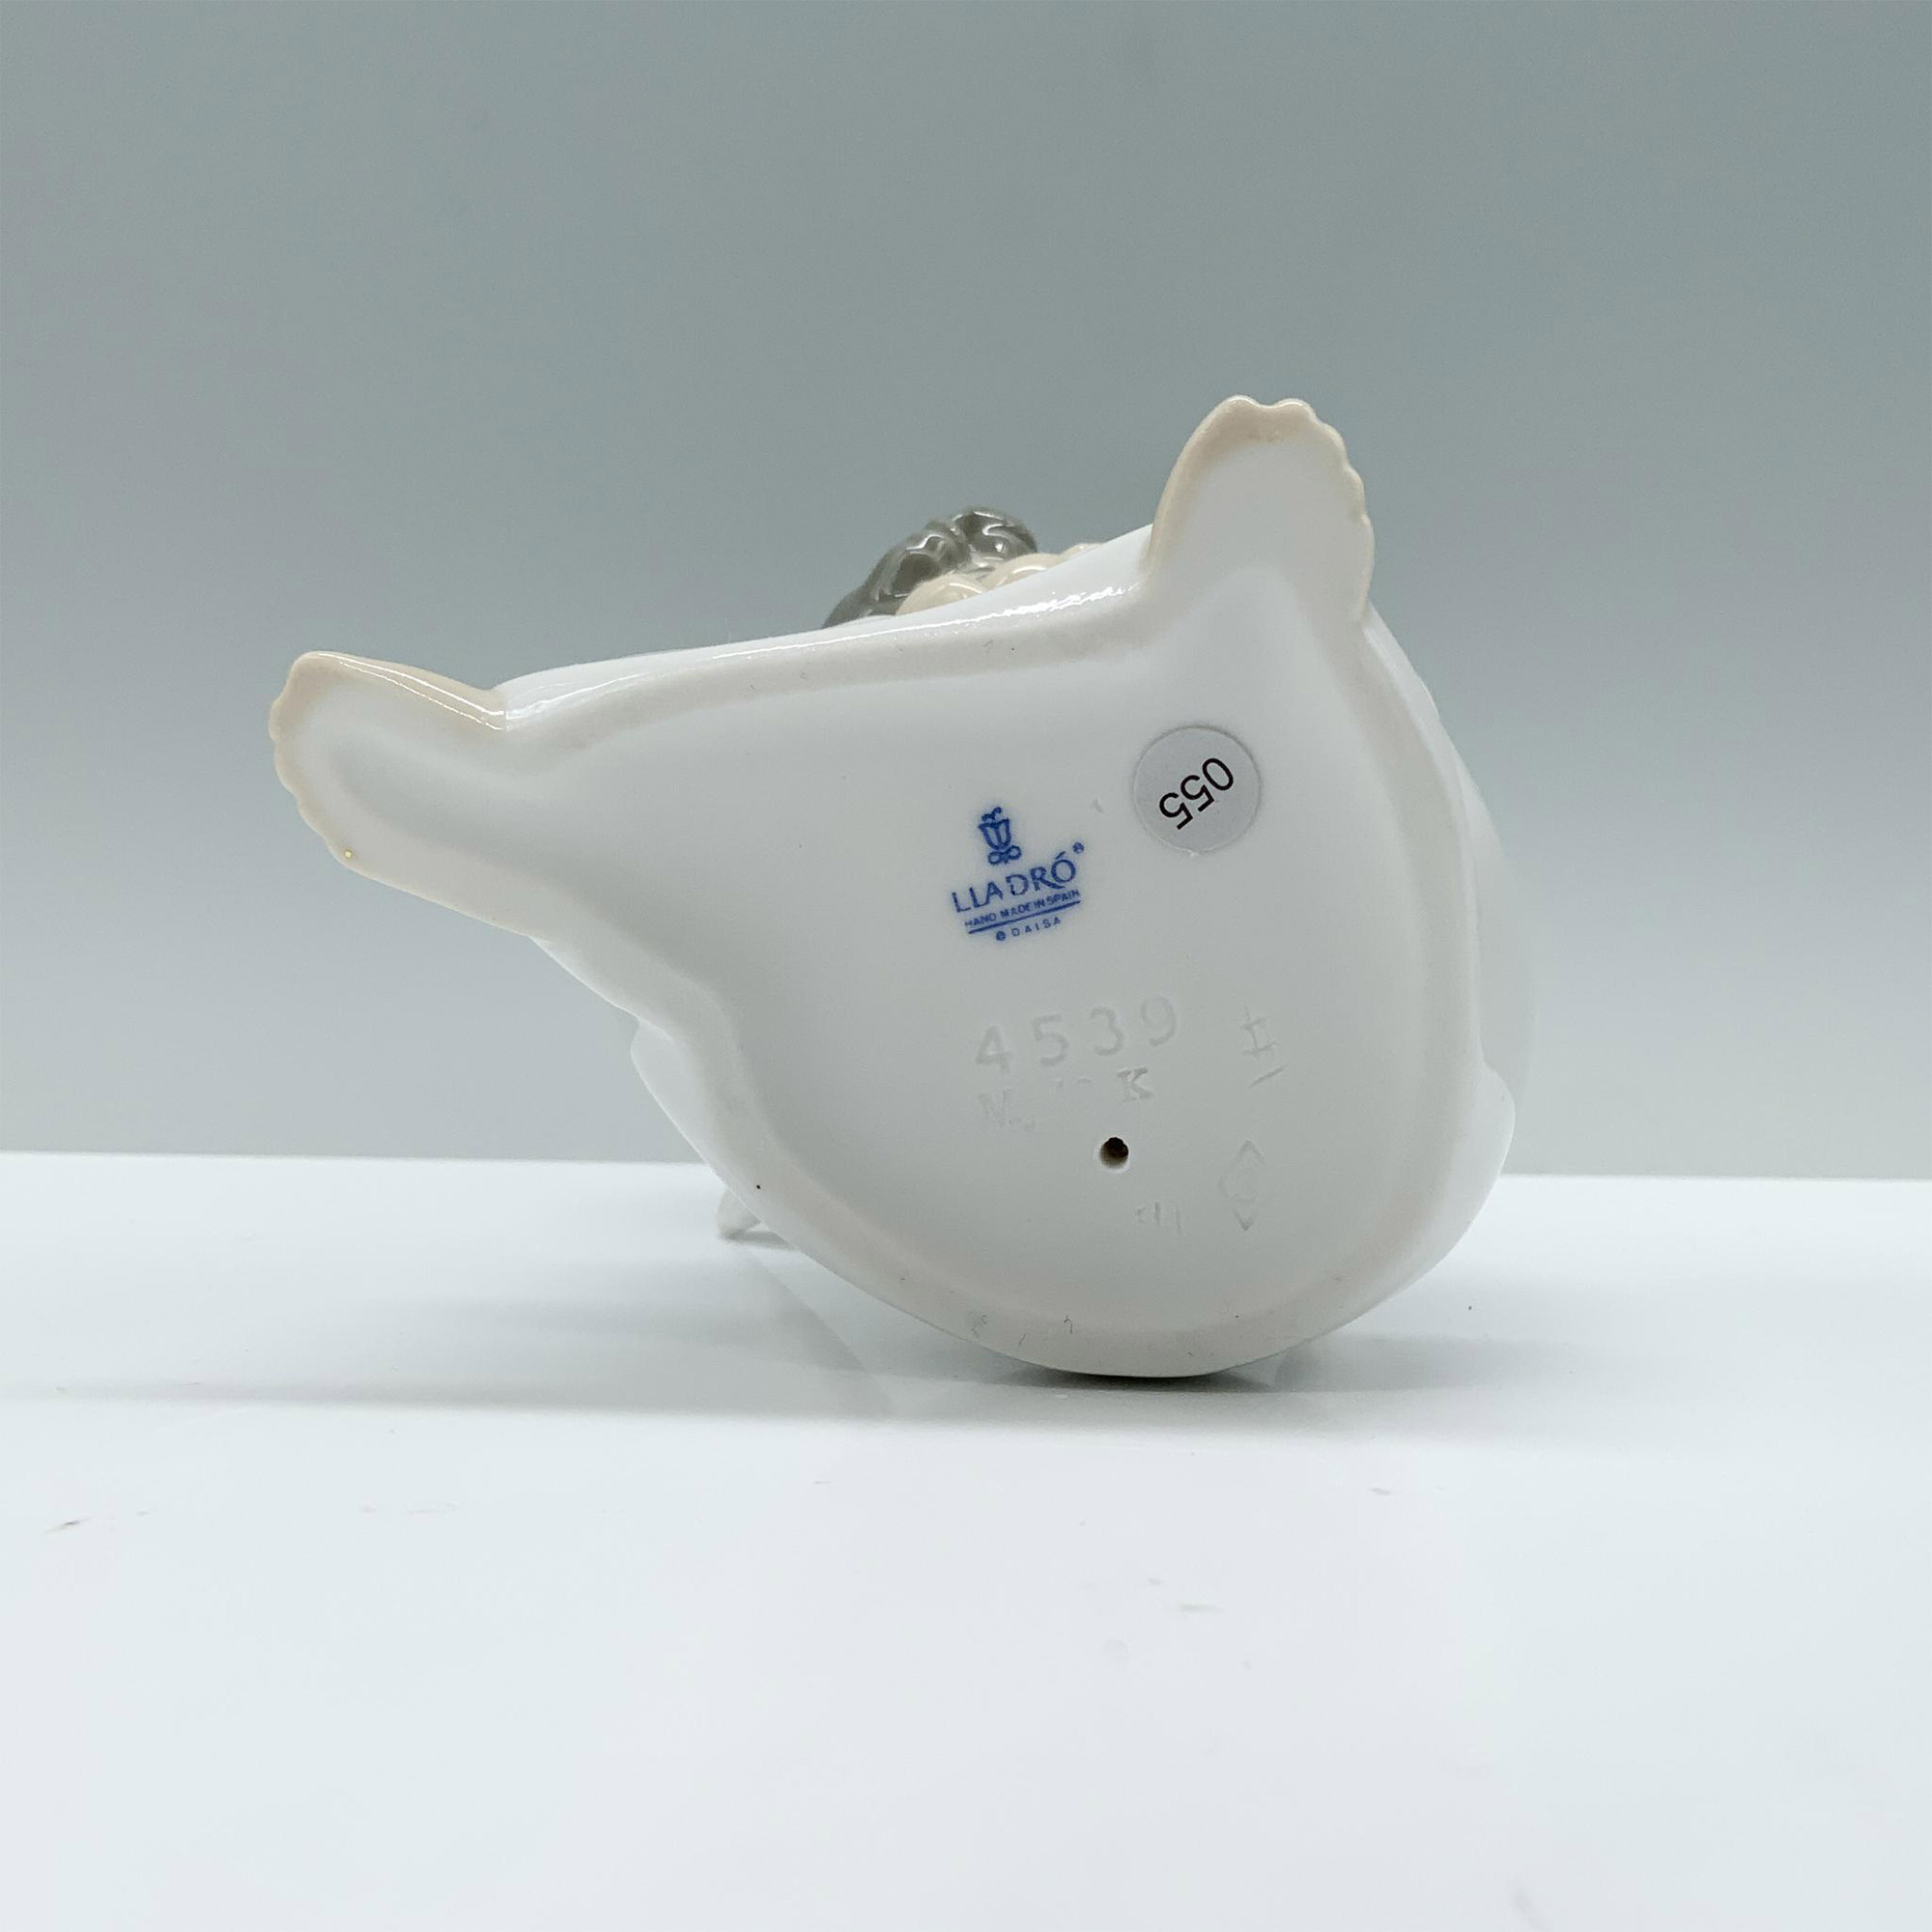 Angel Thinking 1004539 - Lladro Porcelain Figurine - Image 3 of 4